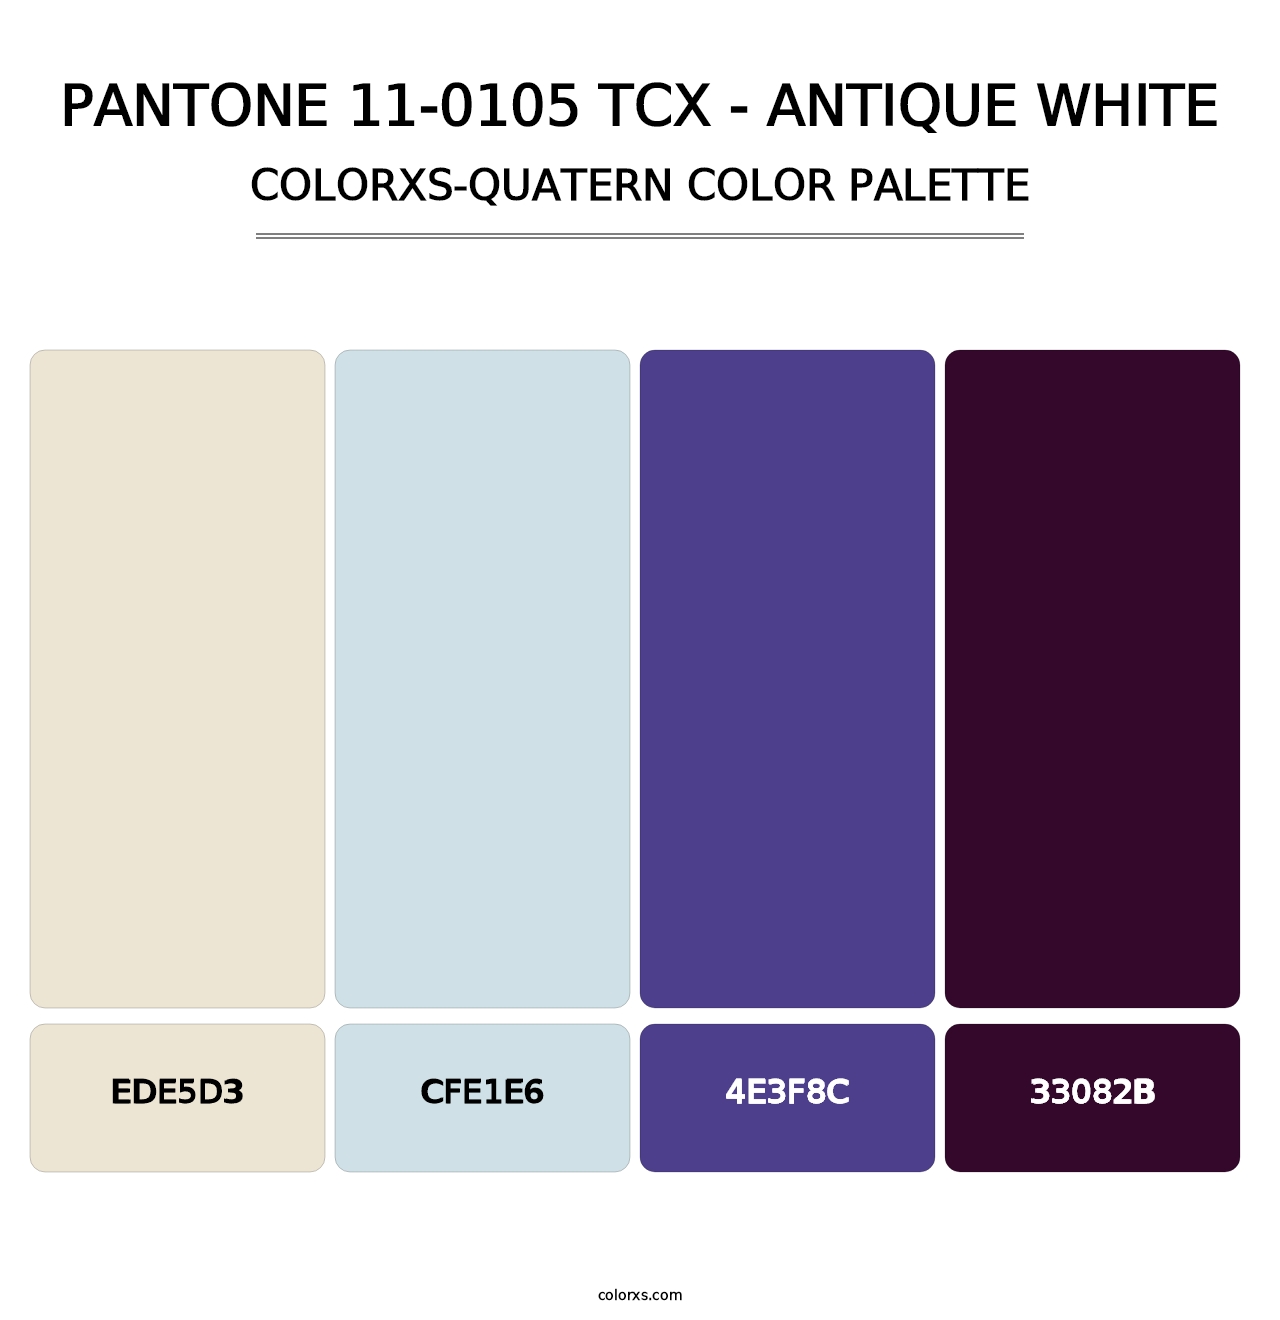 PANTONE 11-0105 TCX - Antique White - Colorxs Quatern Palette